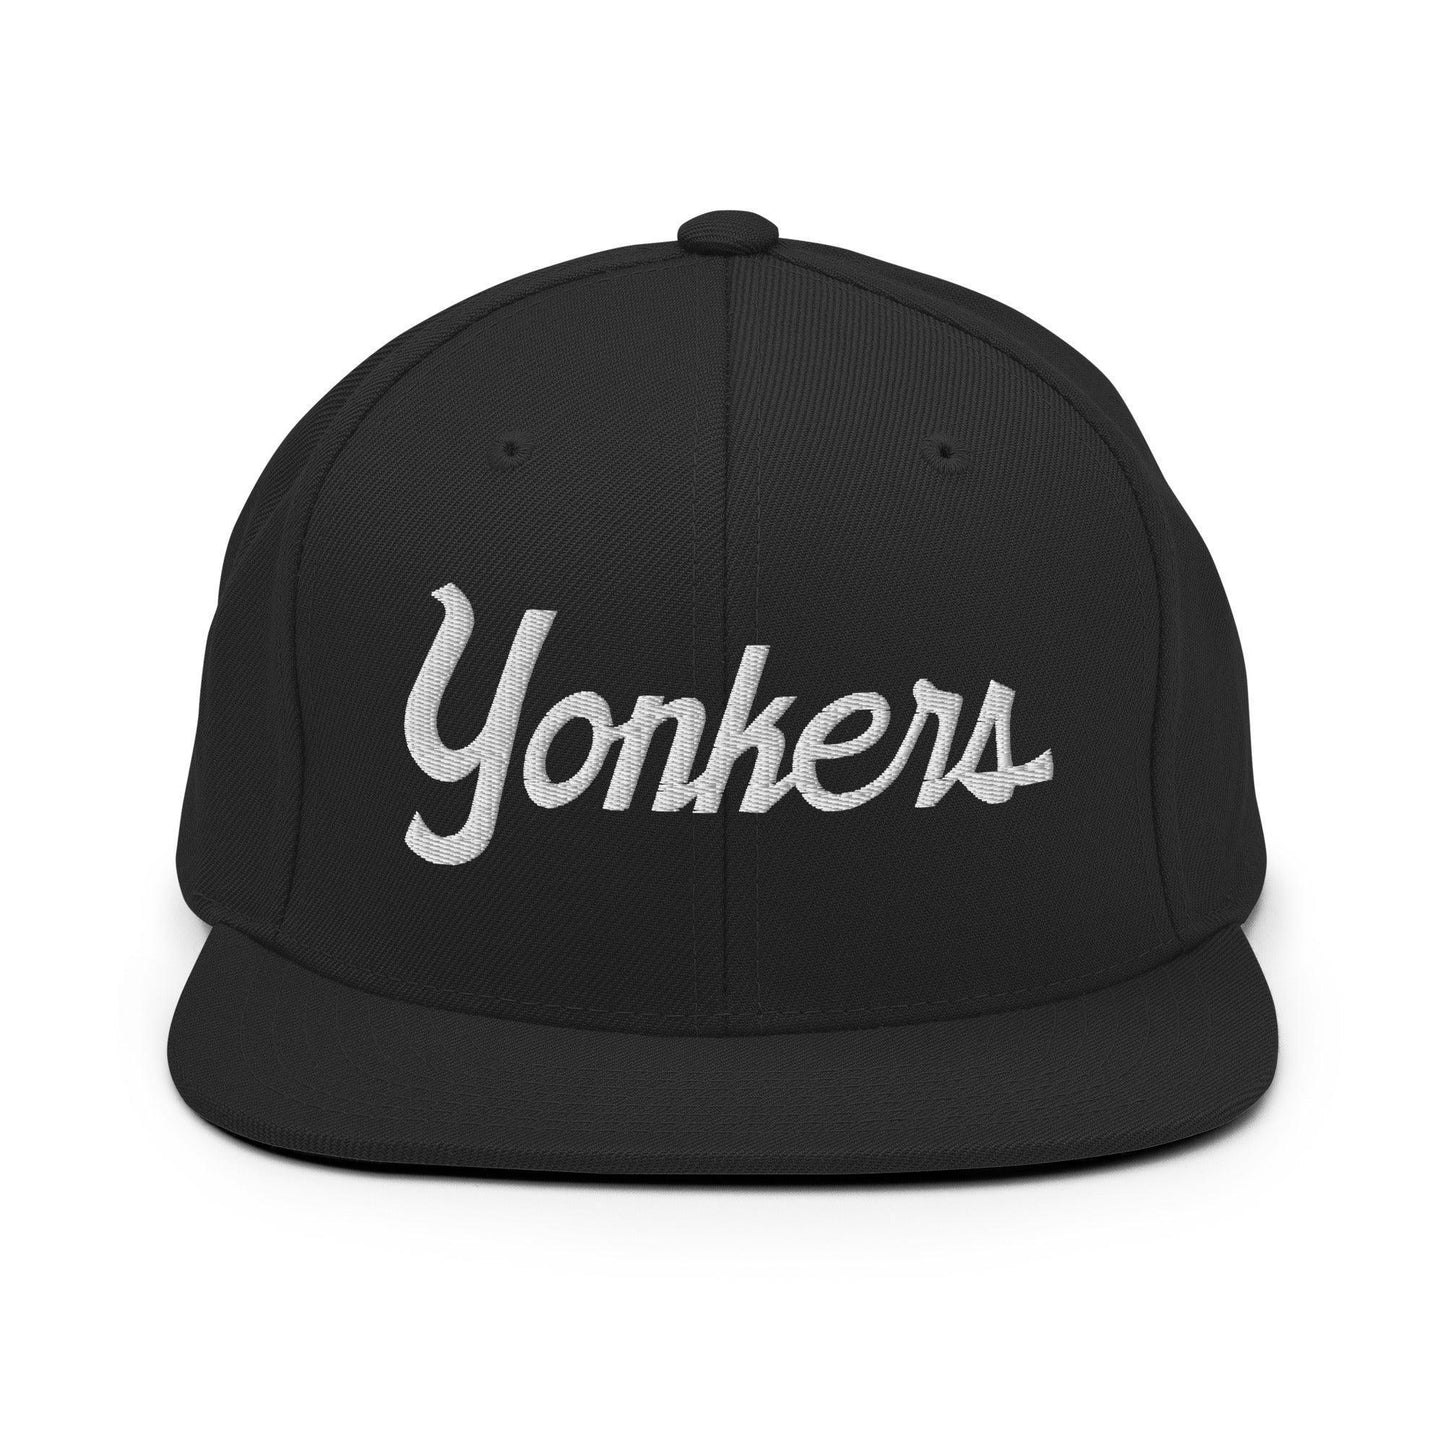 Yonkers Script Snapback Hat Black